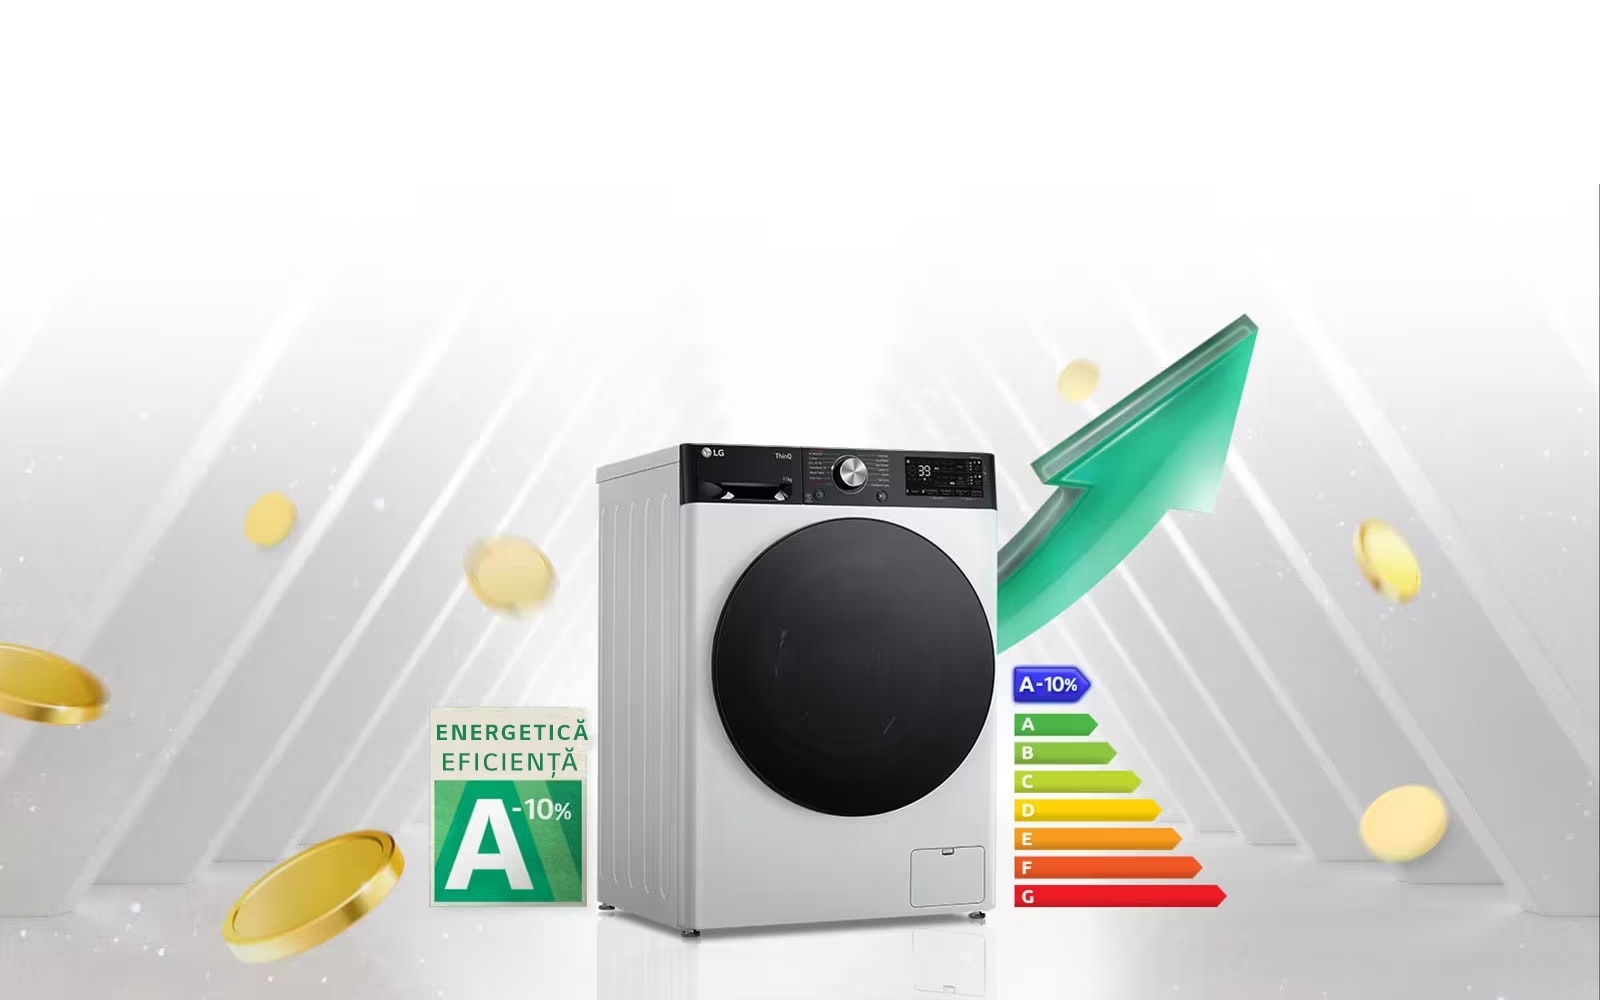 Етикетка з рейтингом енергоефективності A-10% і таблиця енергоефективності розміщені поруч із пральною машиною. На задній панелі пральної машини з’являється зелена стрілка, спрямована вгору.